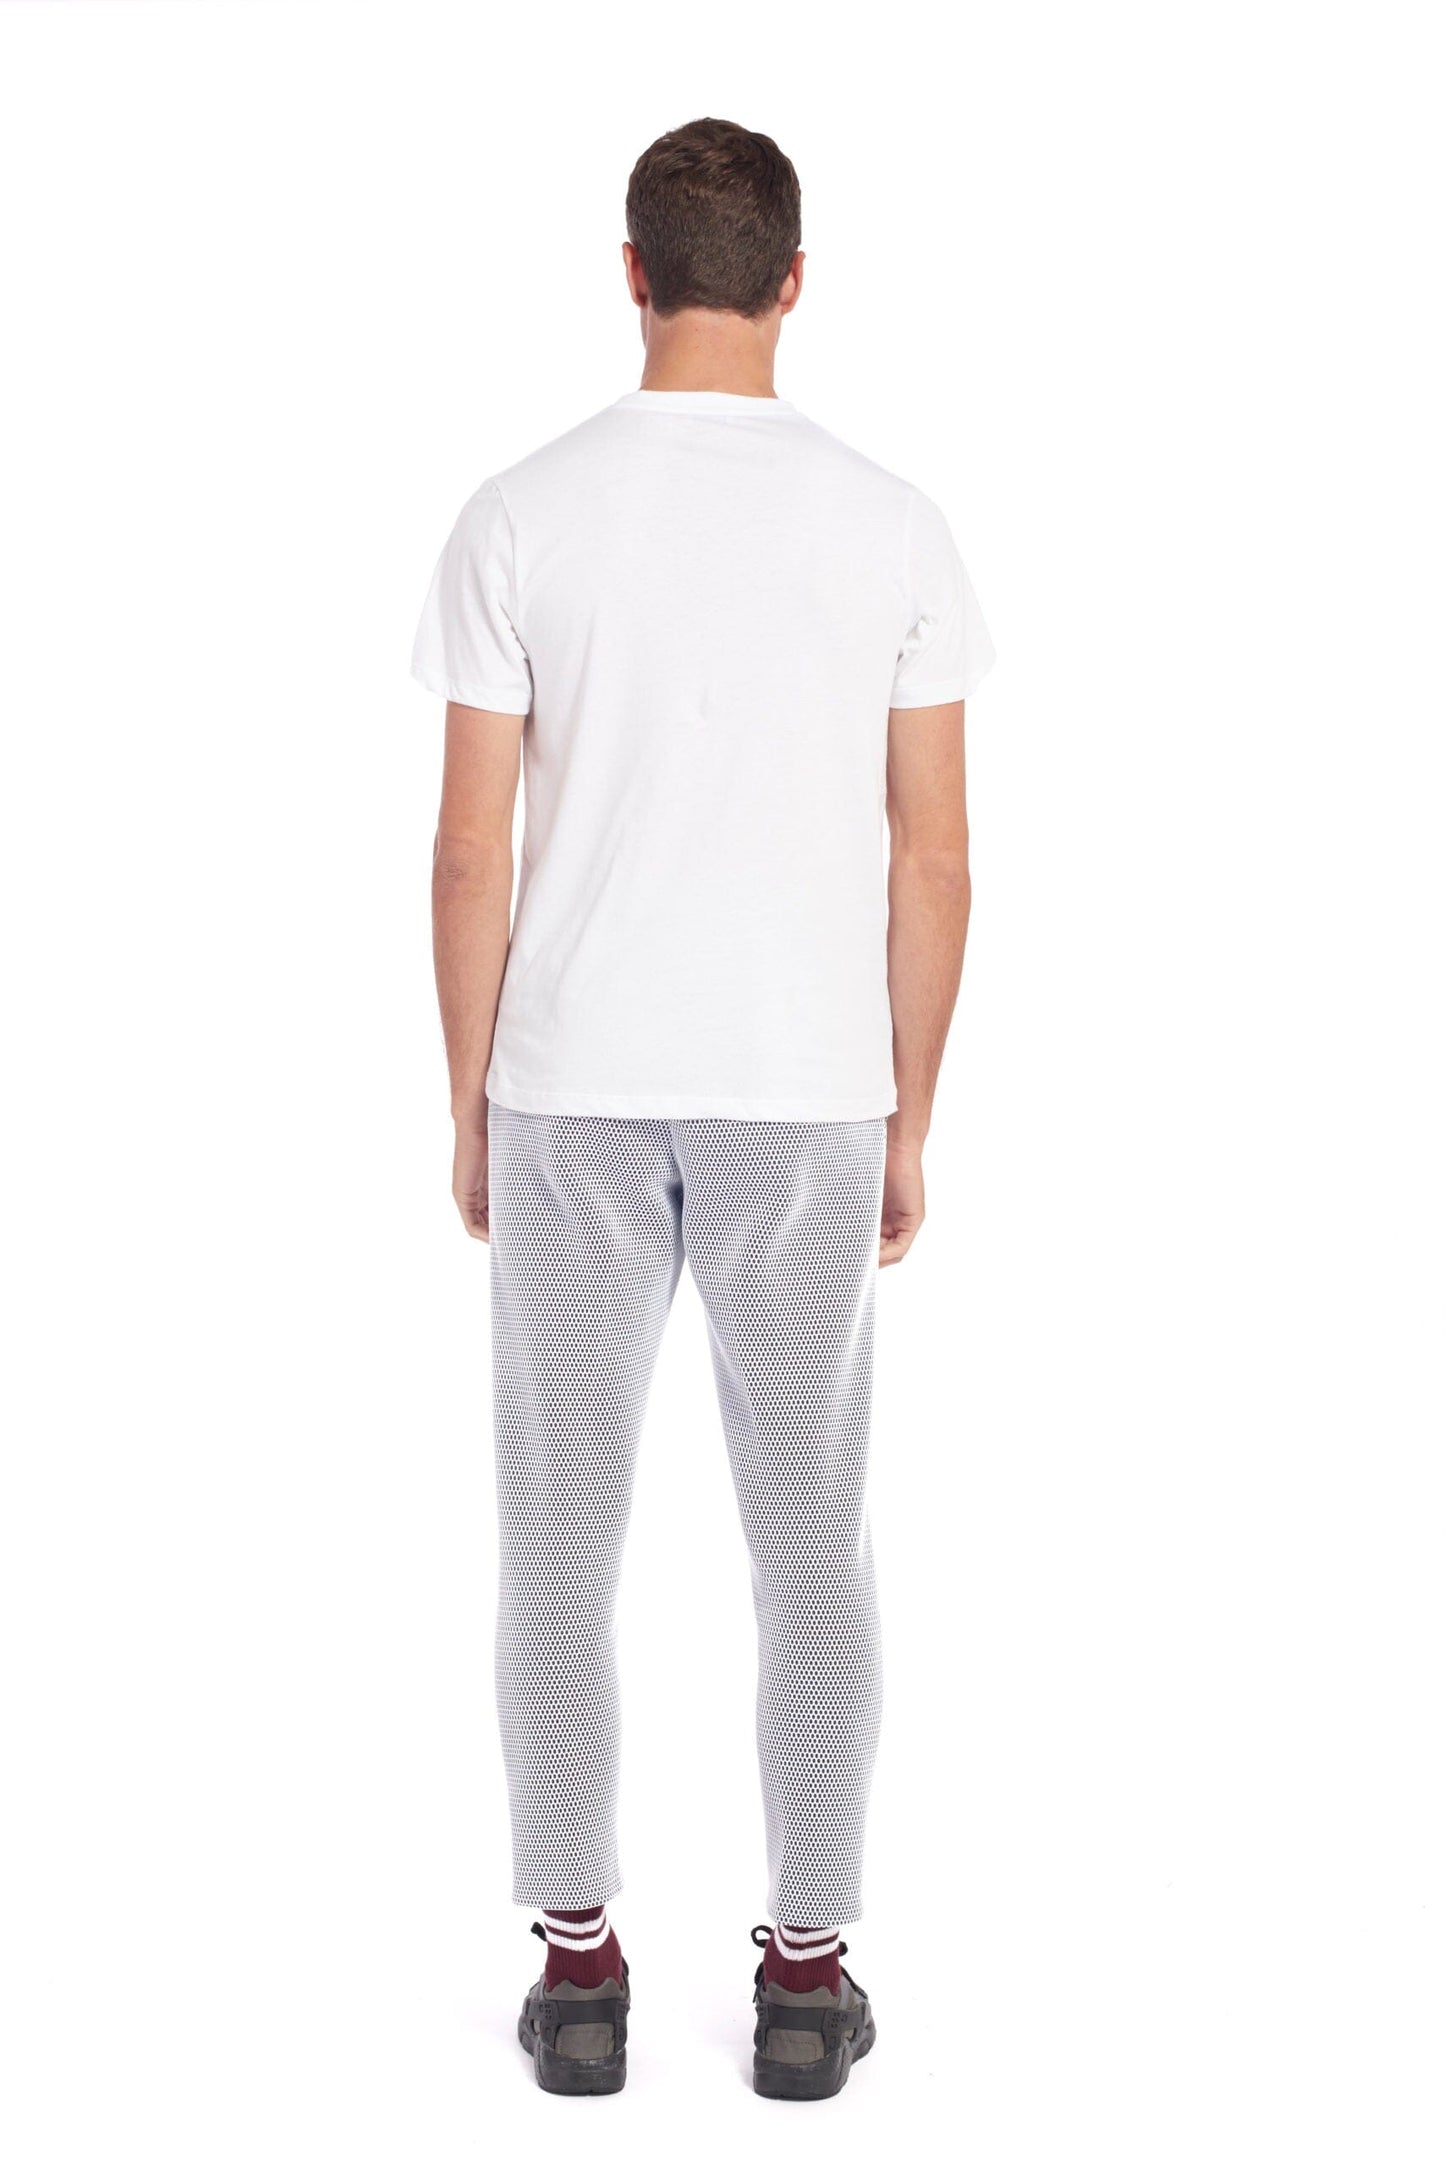 Jimba - White T-shirt LaurenceAirline 